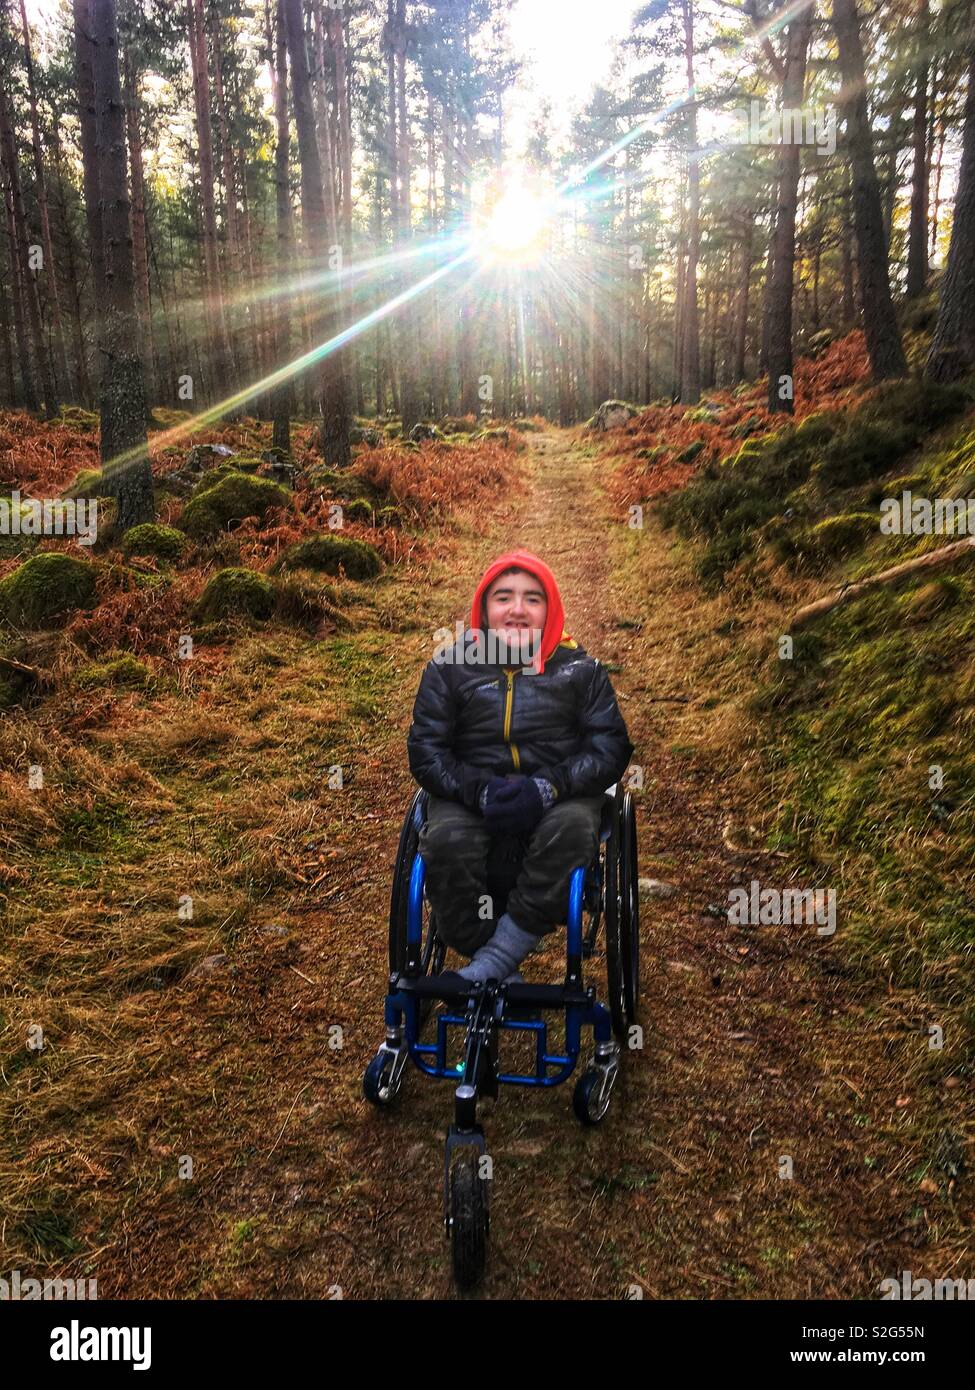 Wheelchair winter forest walk Stock Photo